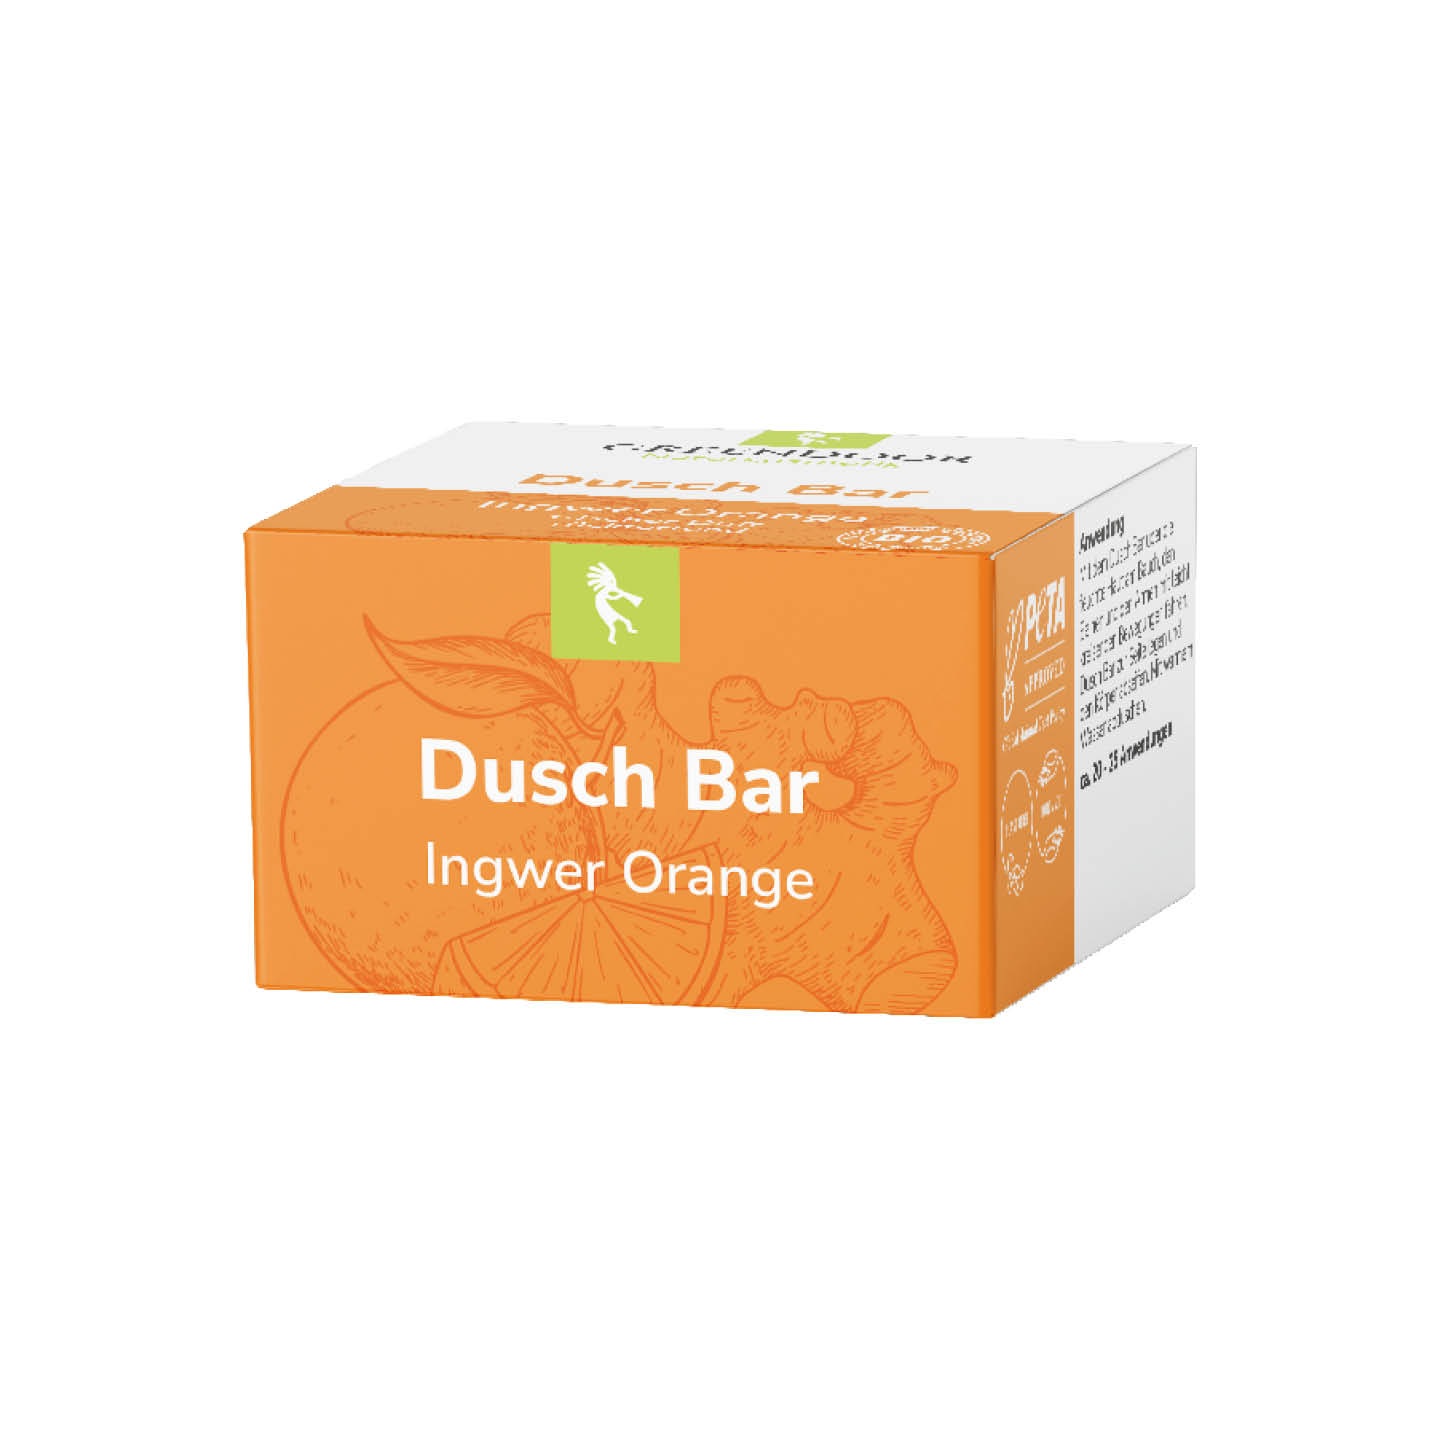 Dusch Bar Ingwer Orange